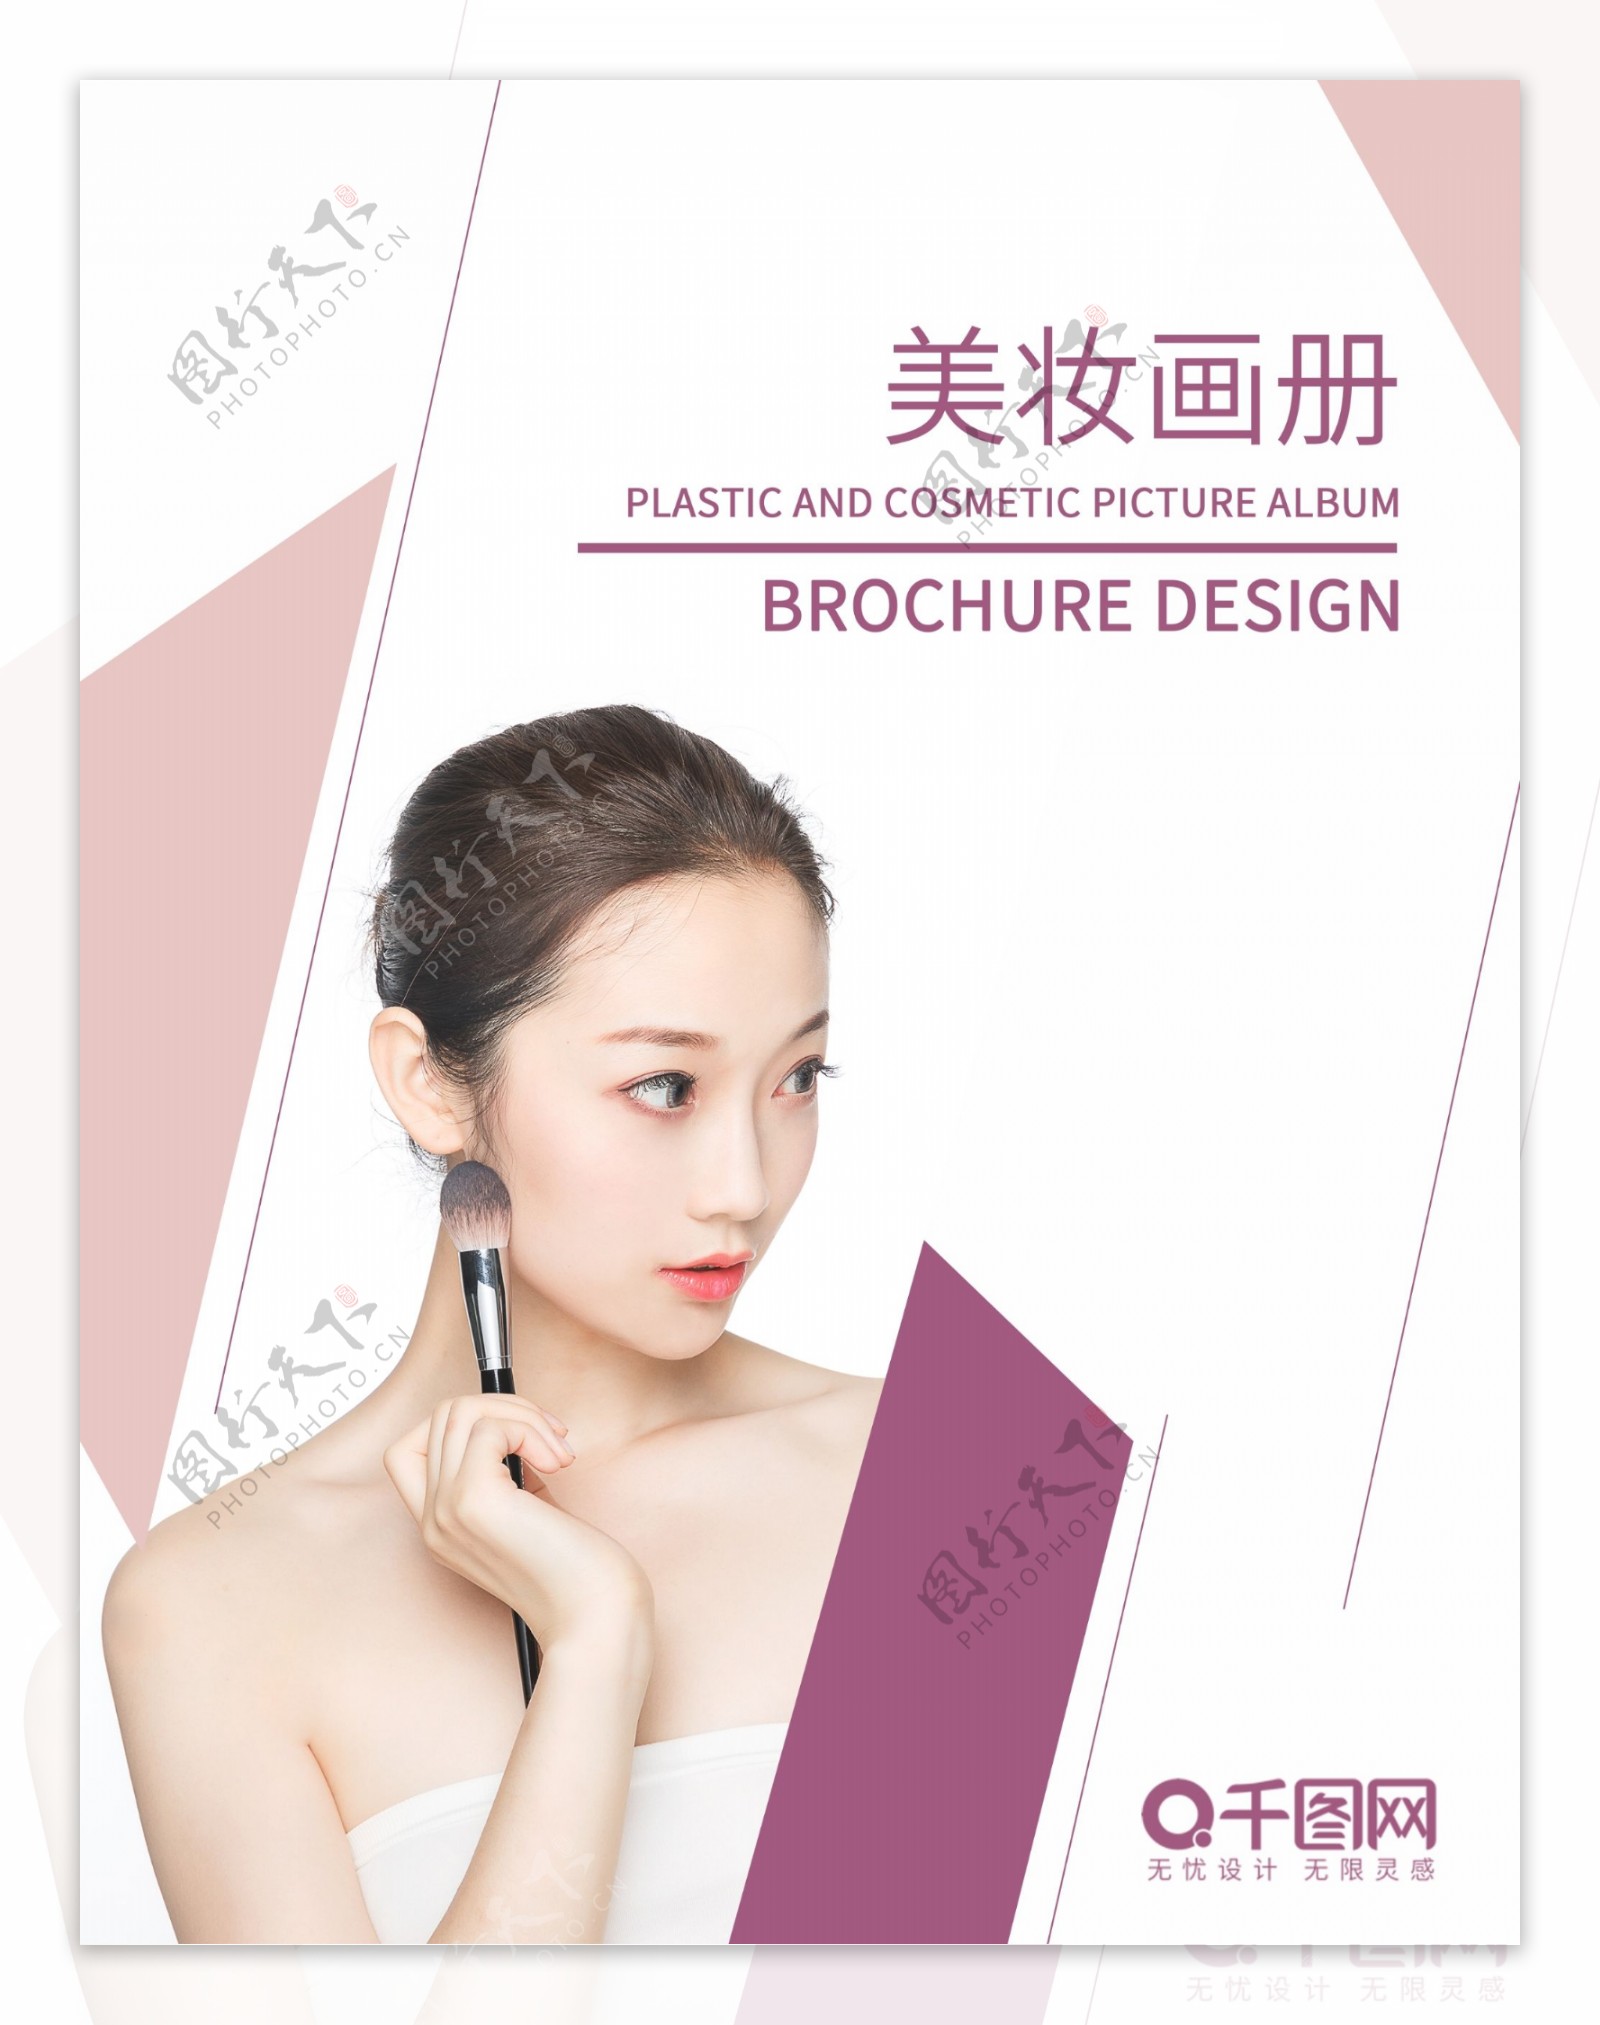 紫色几何简约时尚高档化妆美容护肤画册封面